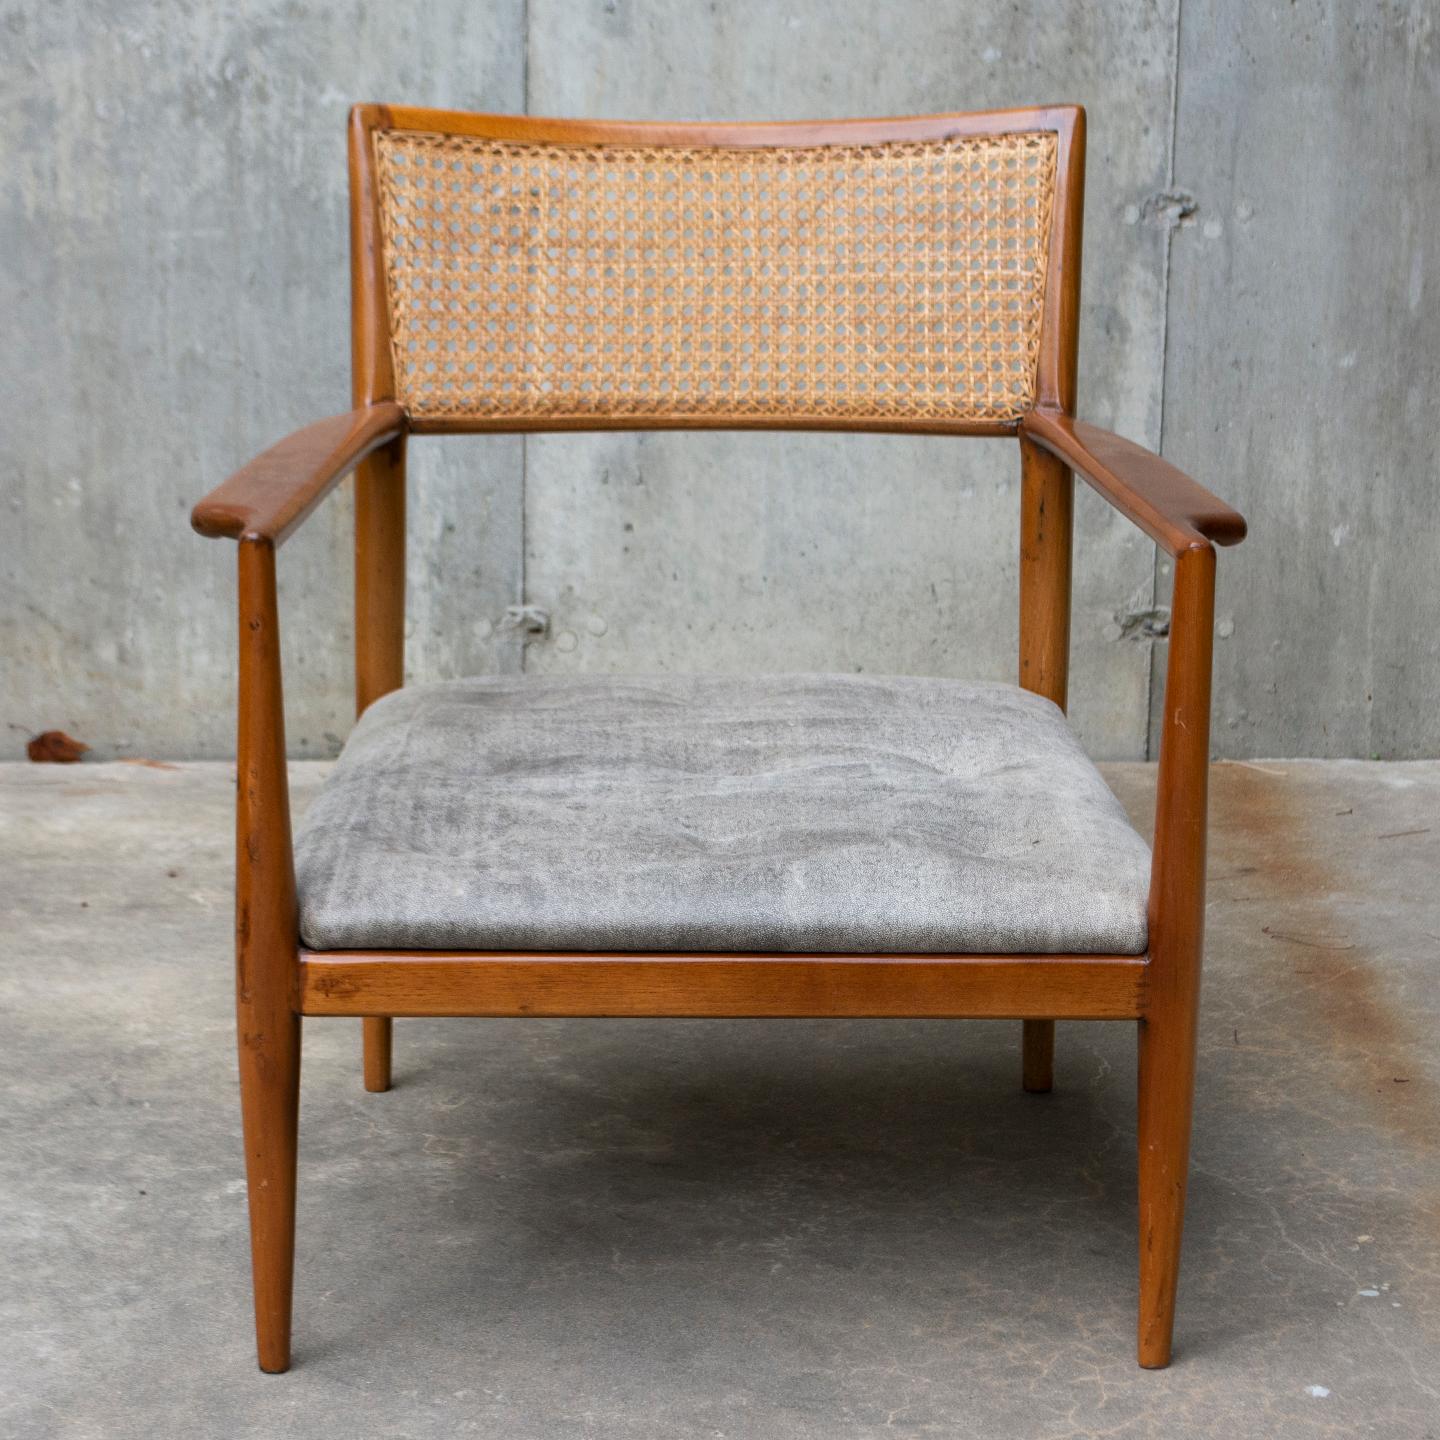 La couleur brune chaude du cadre élancé de cette chaise s'harmonise parfaitement avec le revêtement gris froid de l'assise touffetée. Sculptée dans du bois de rose, la chaise présente des accoudoirs gracieusement sculptés, un dossier classique en